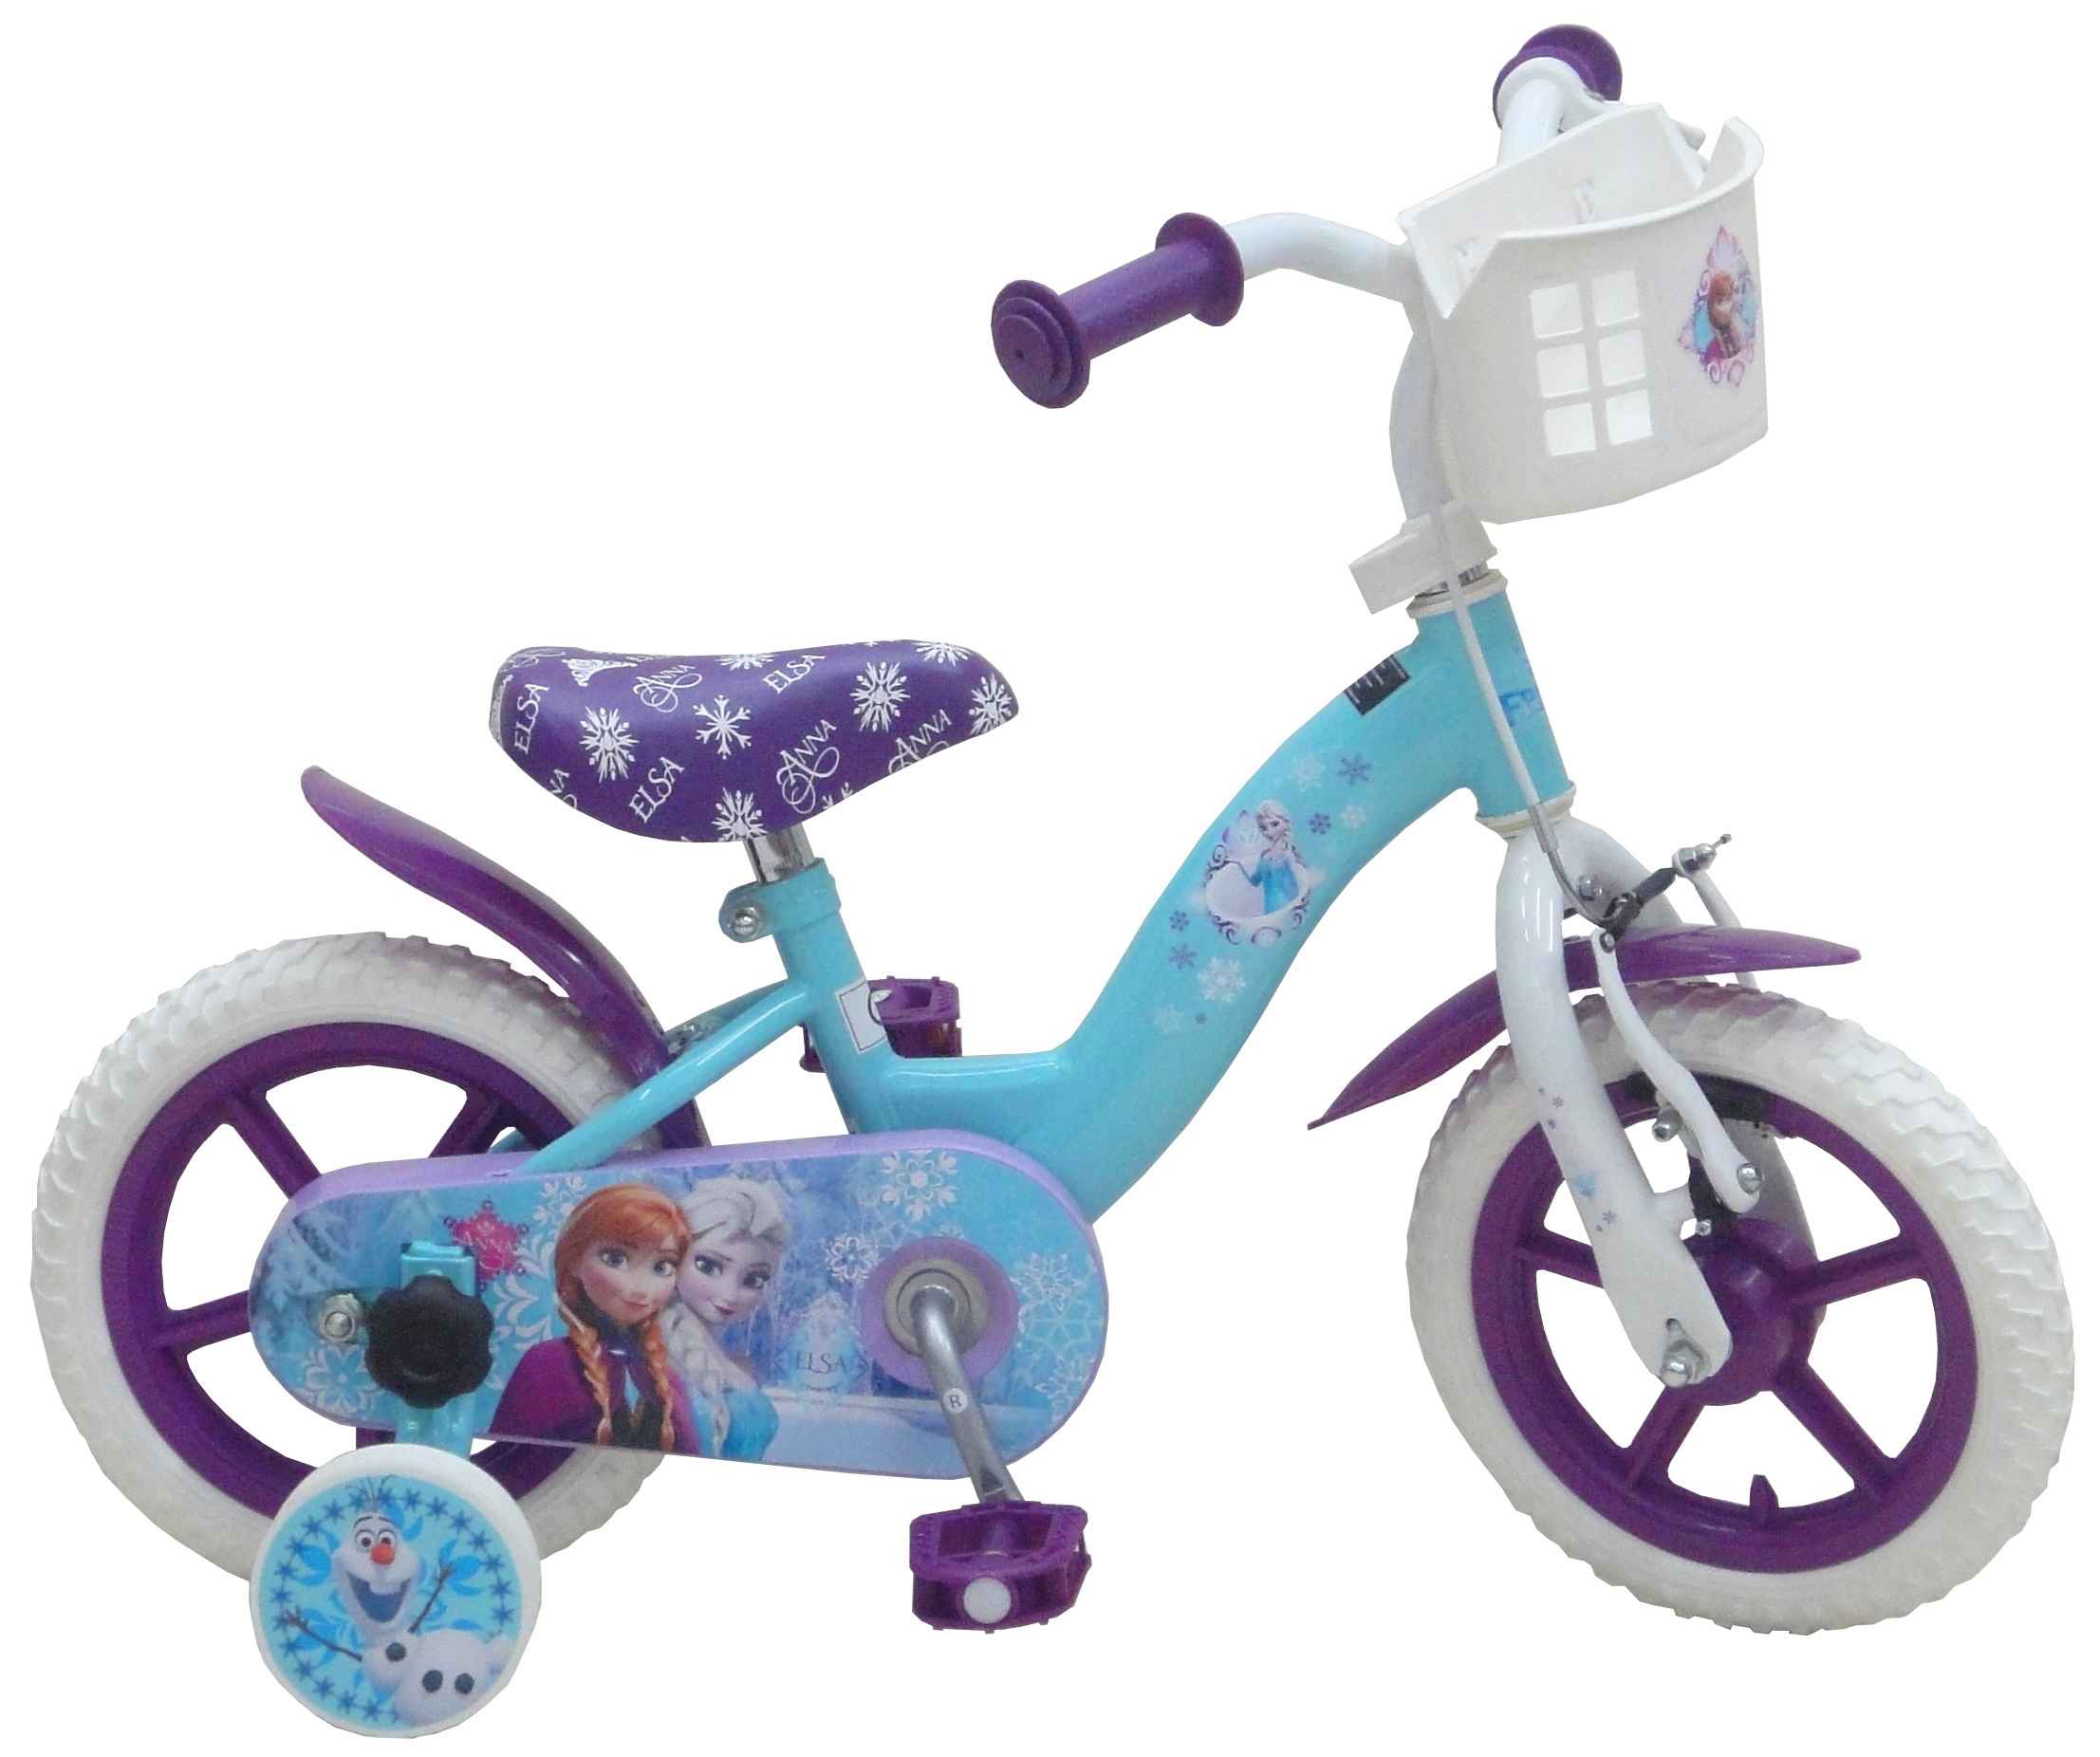 Vélo Disney La Reine des neiges pour enfants, 12 po, bleu/blanc